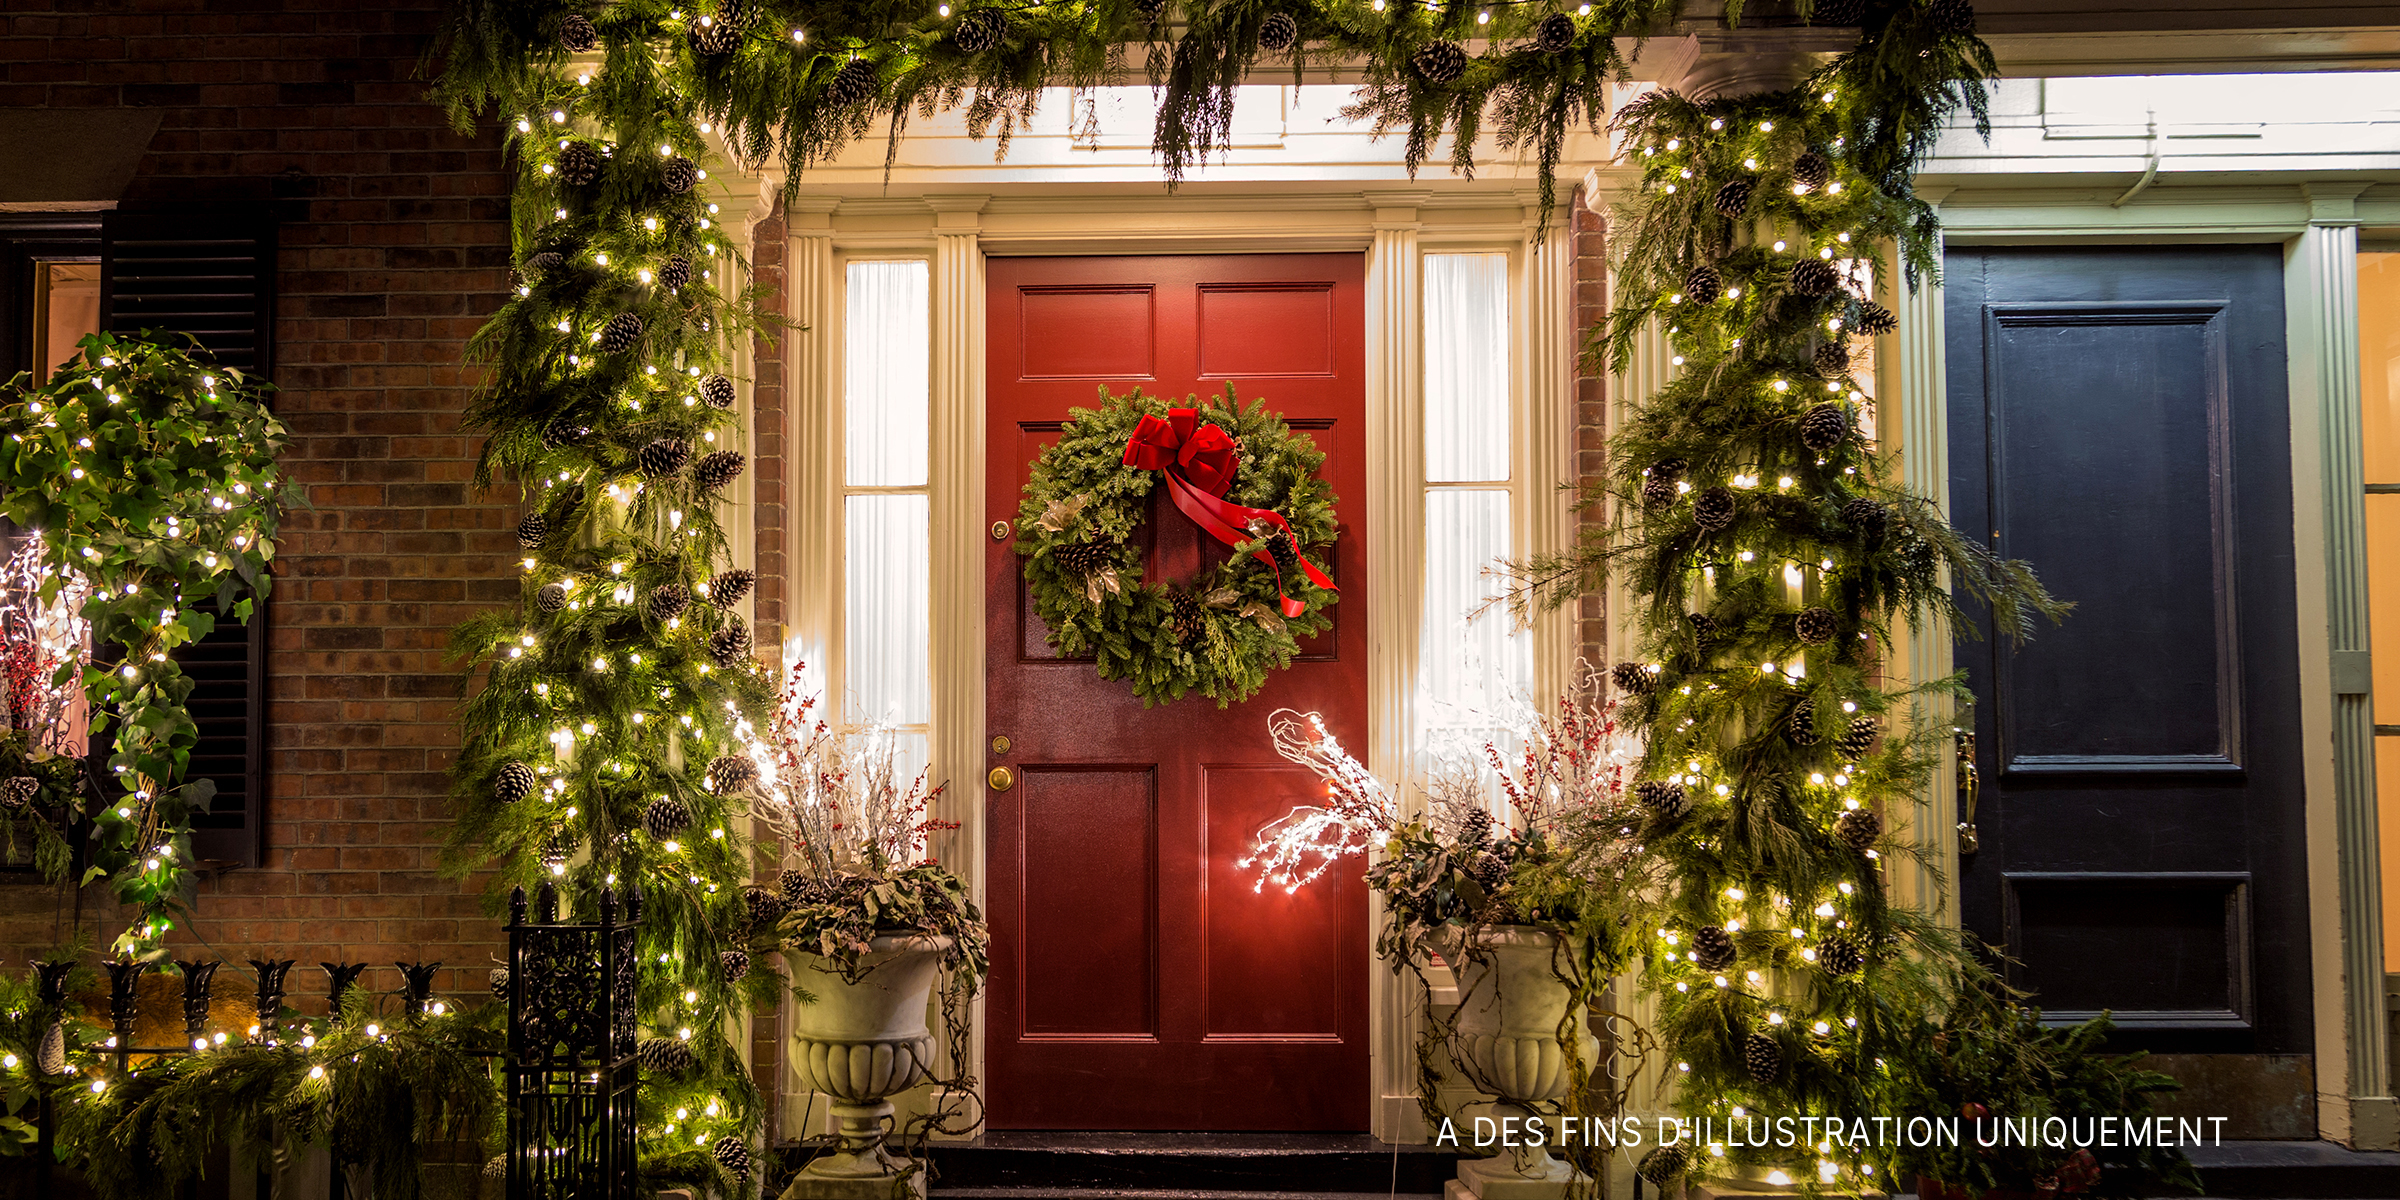 Une maison ornée de décorations de Noël | Source : Shutterstock